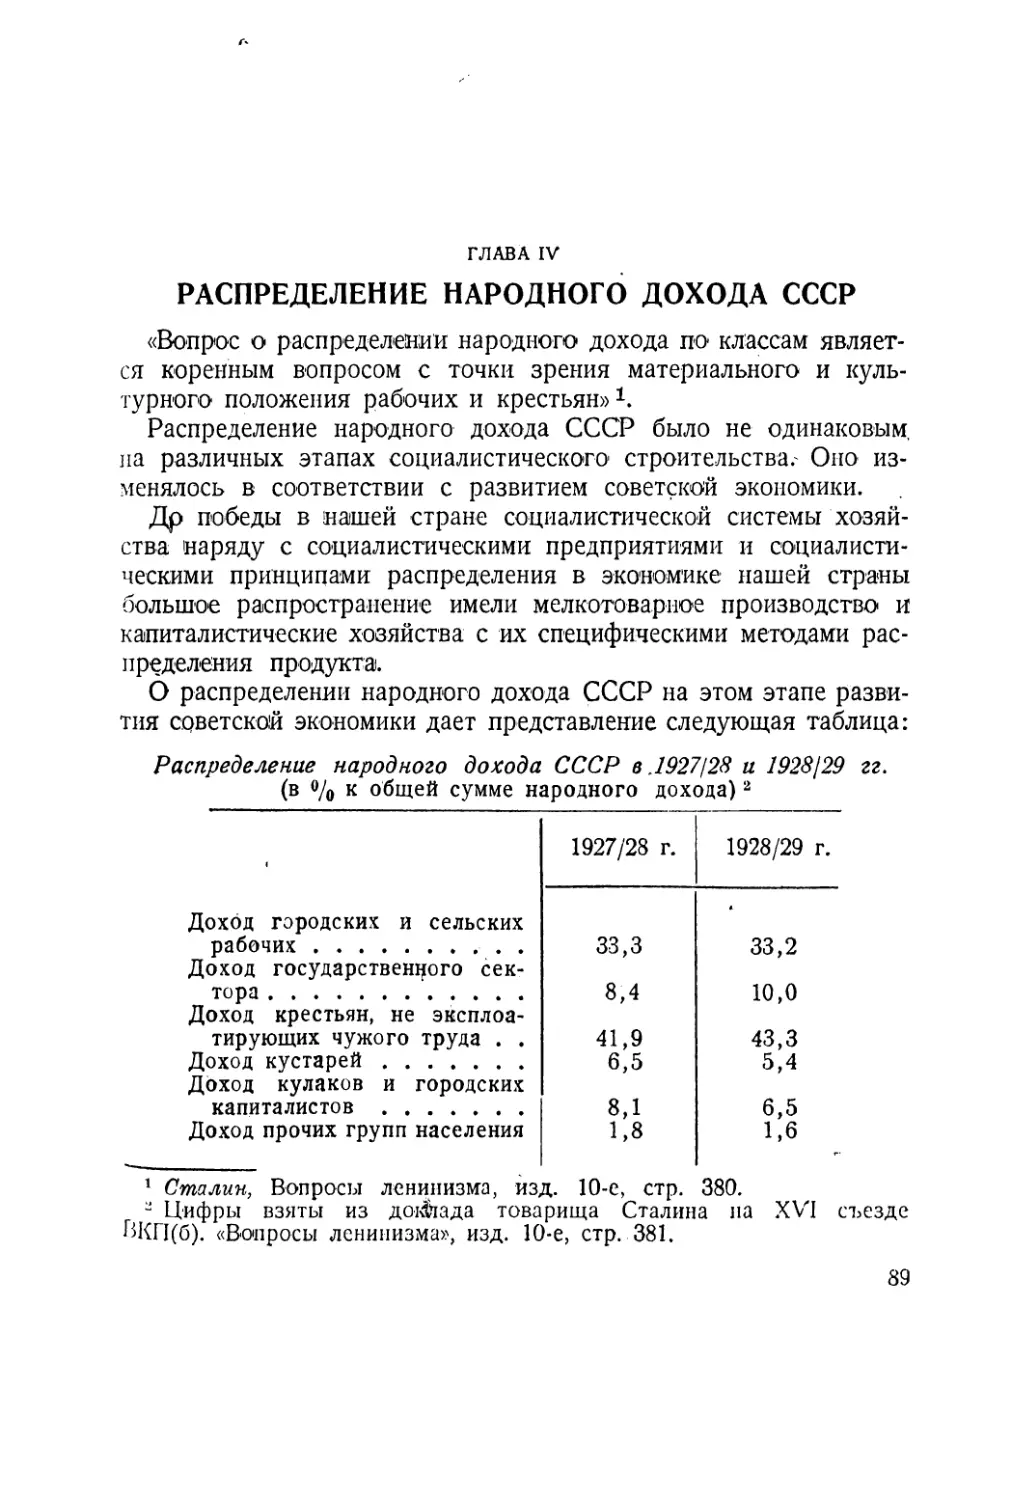 Глава IV. Распределение народного дохода СССР